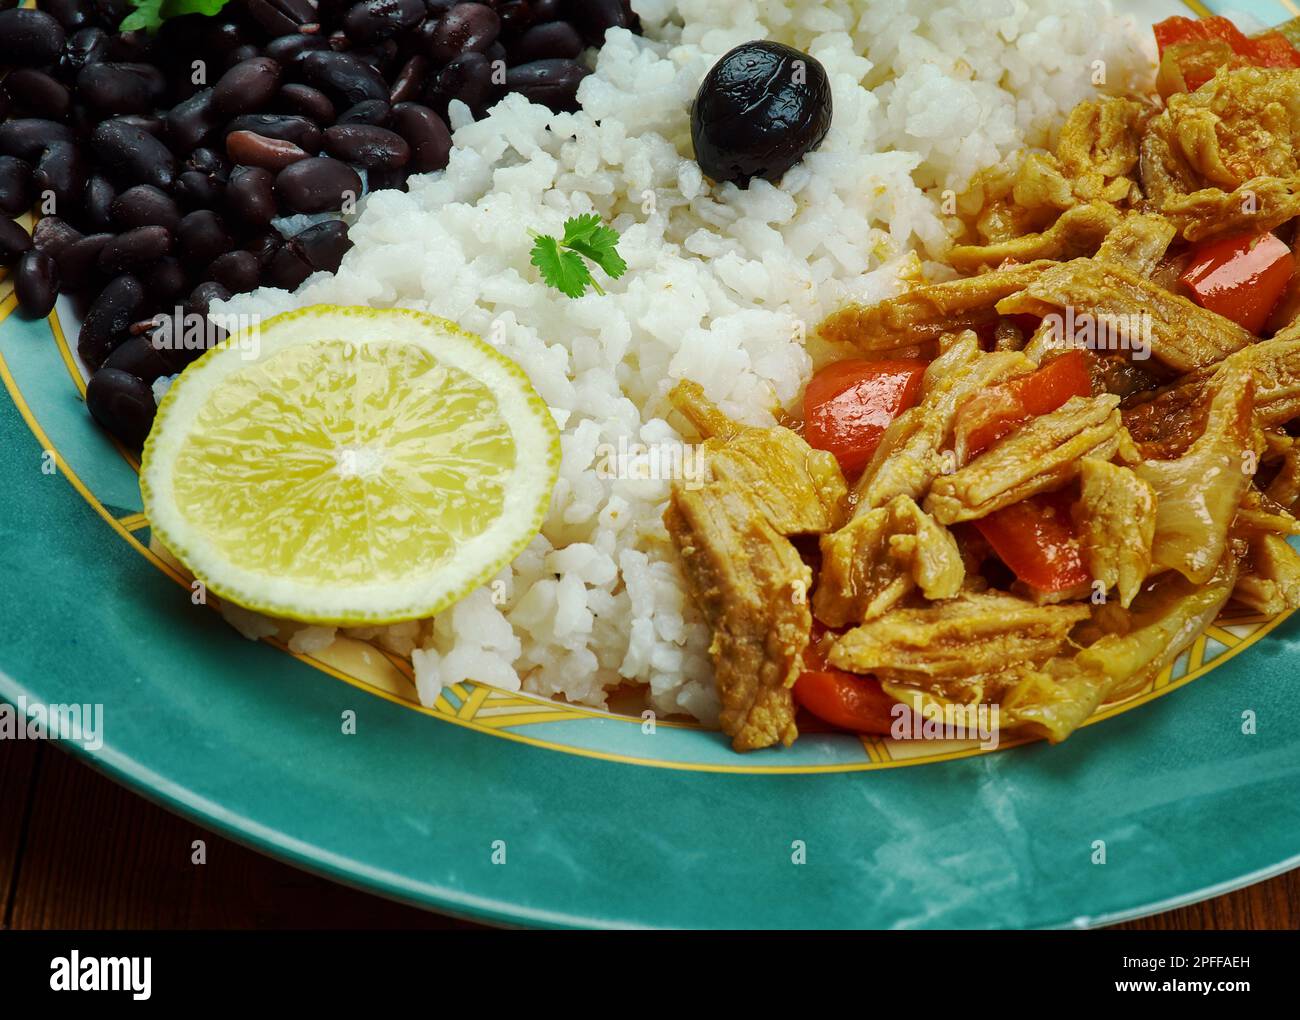 La Bandera Dominicana - Almuerzo nacional tradicional, plato consiste en arroz, frijoles rojos y carne. Foto de stock